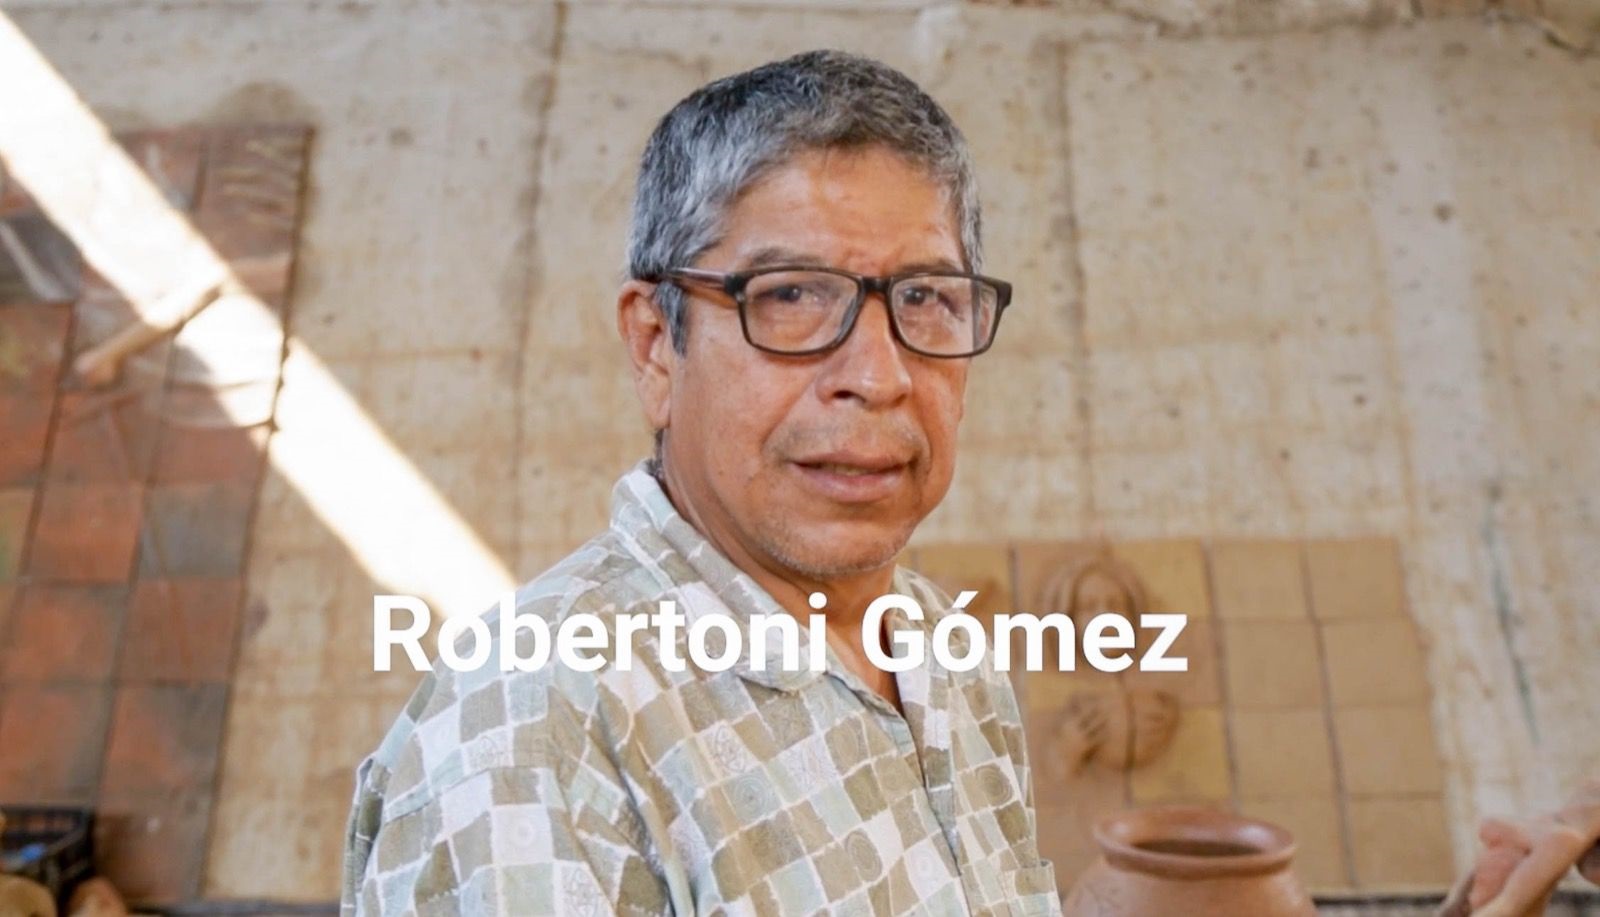 Robertoni Gómez